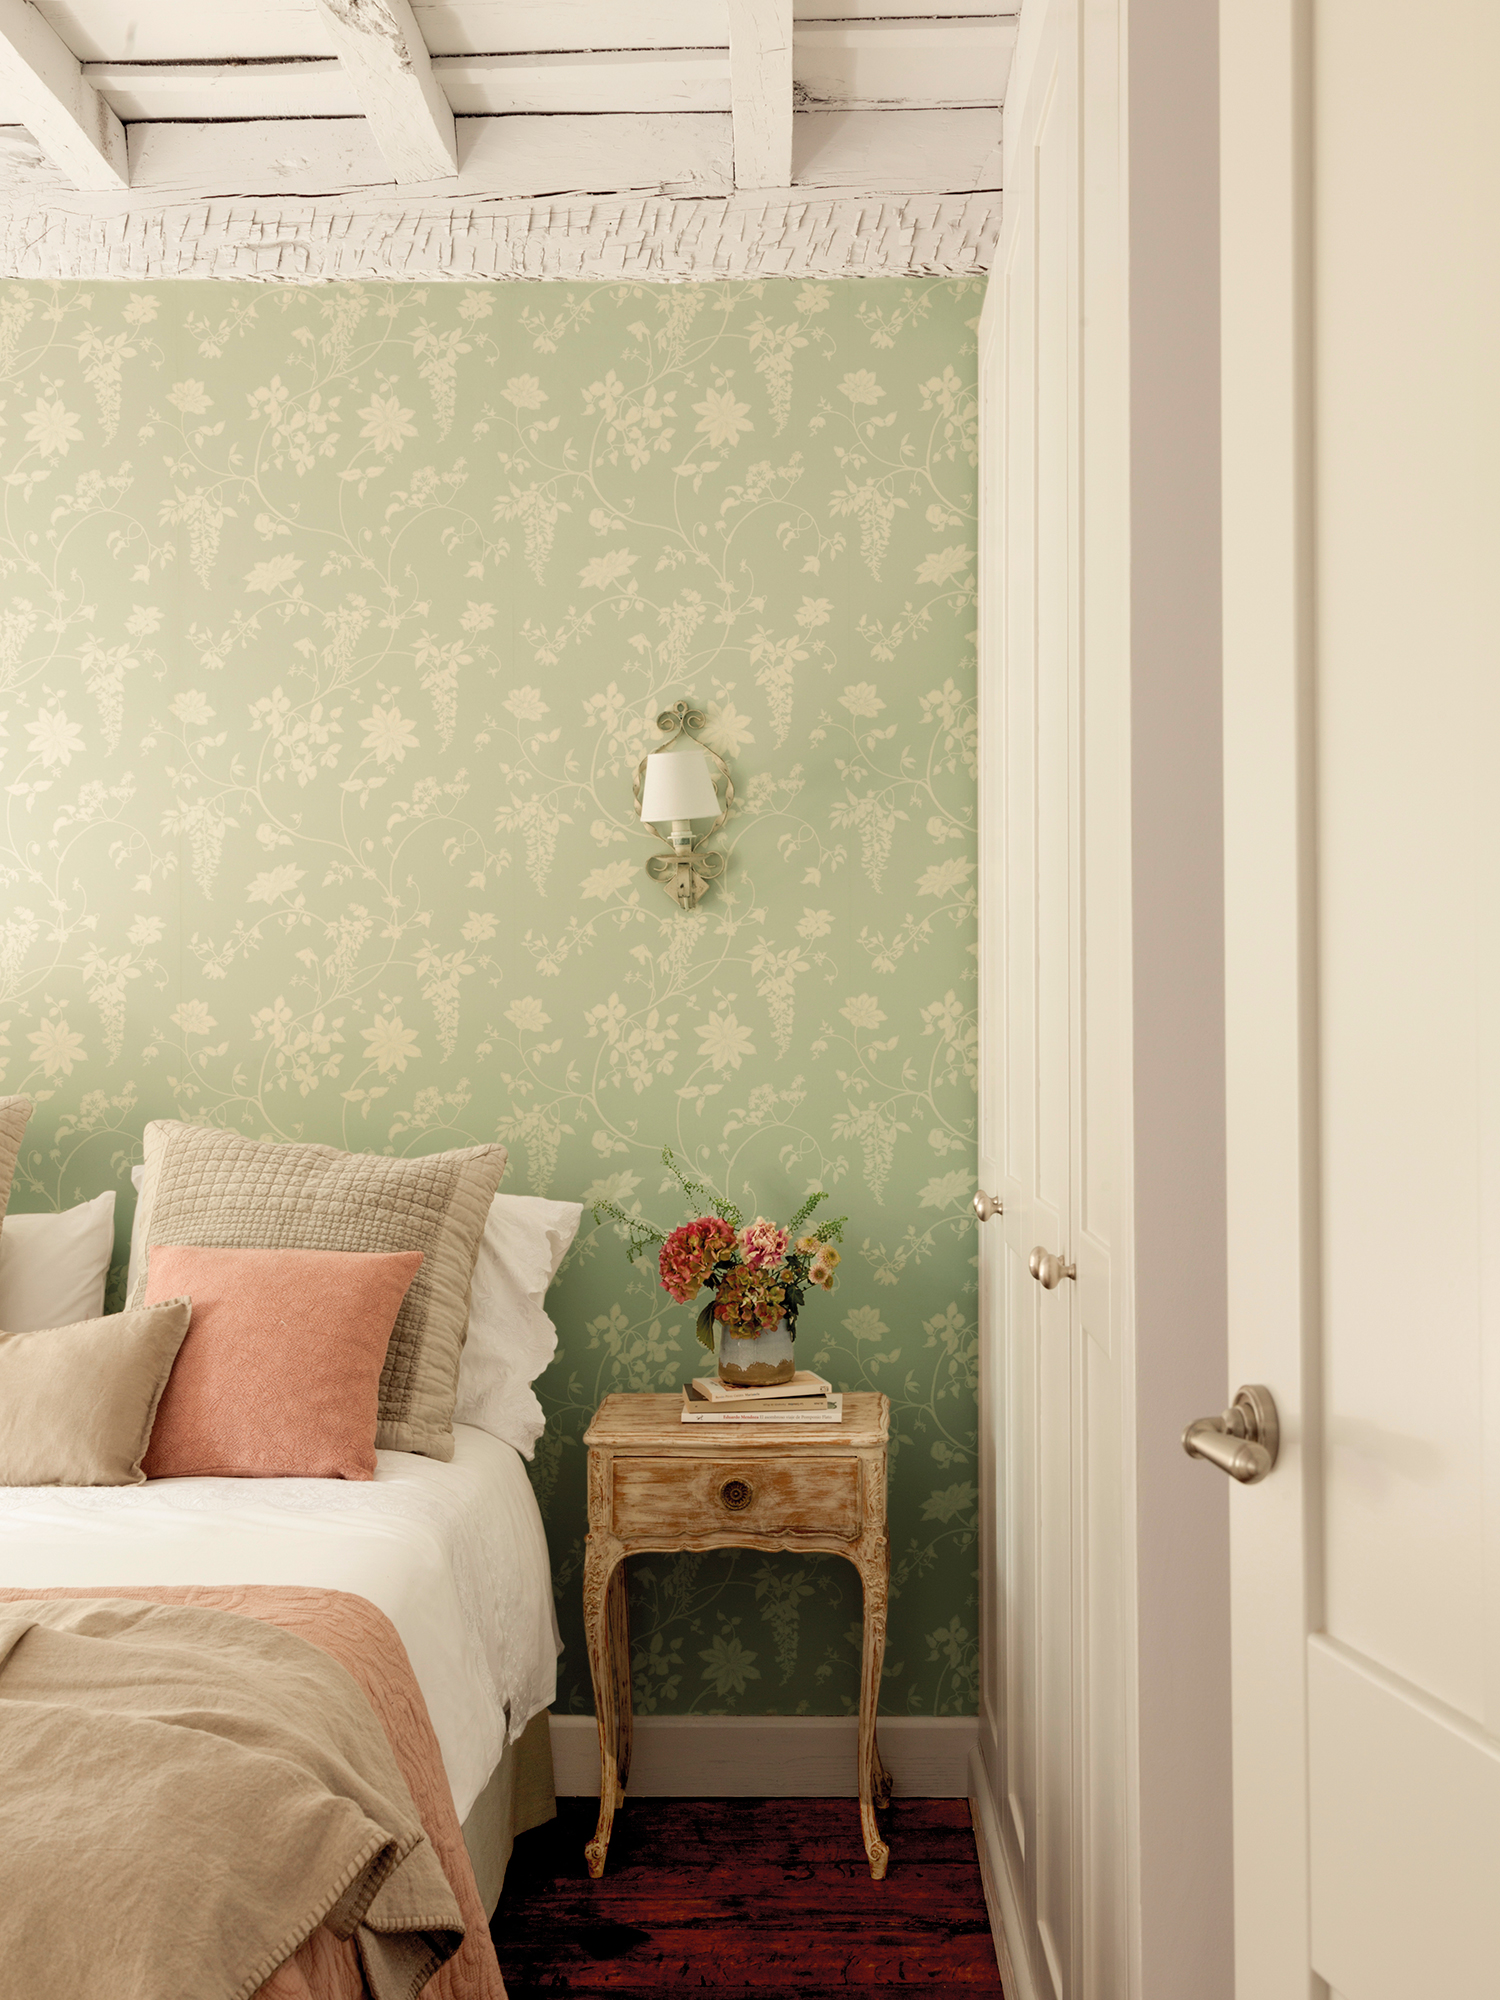 Dormitorio con papel pintado floral vintage y mesita de noche antigua